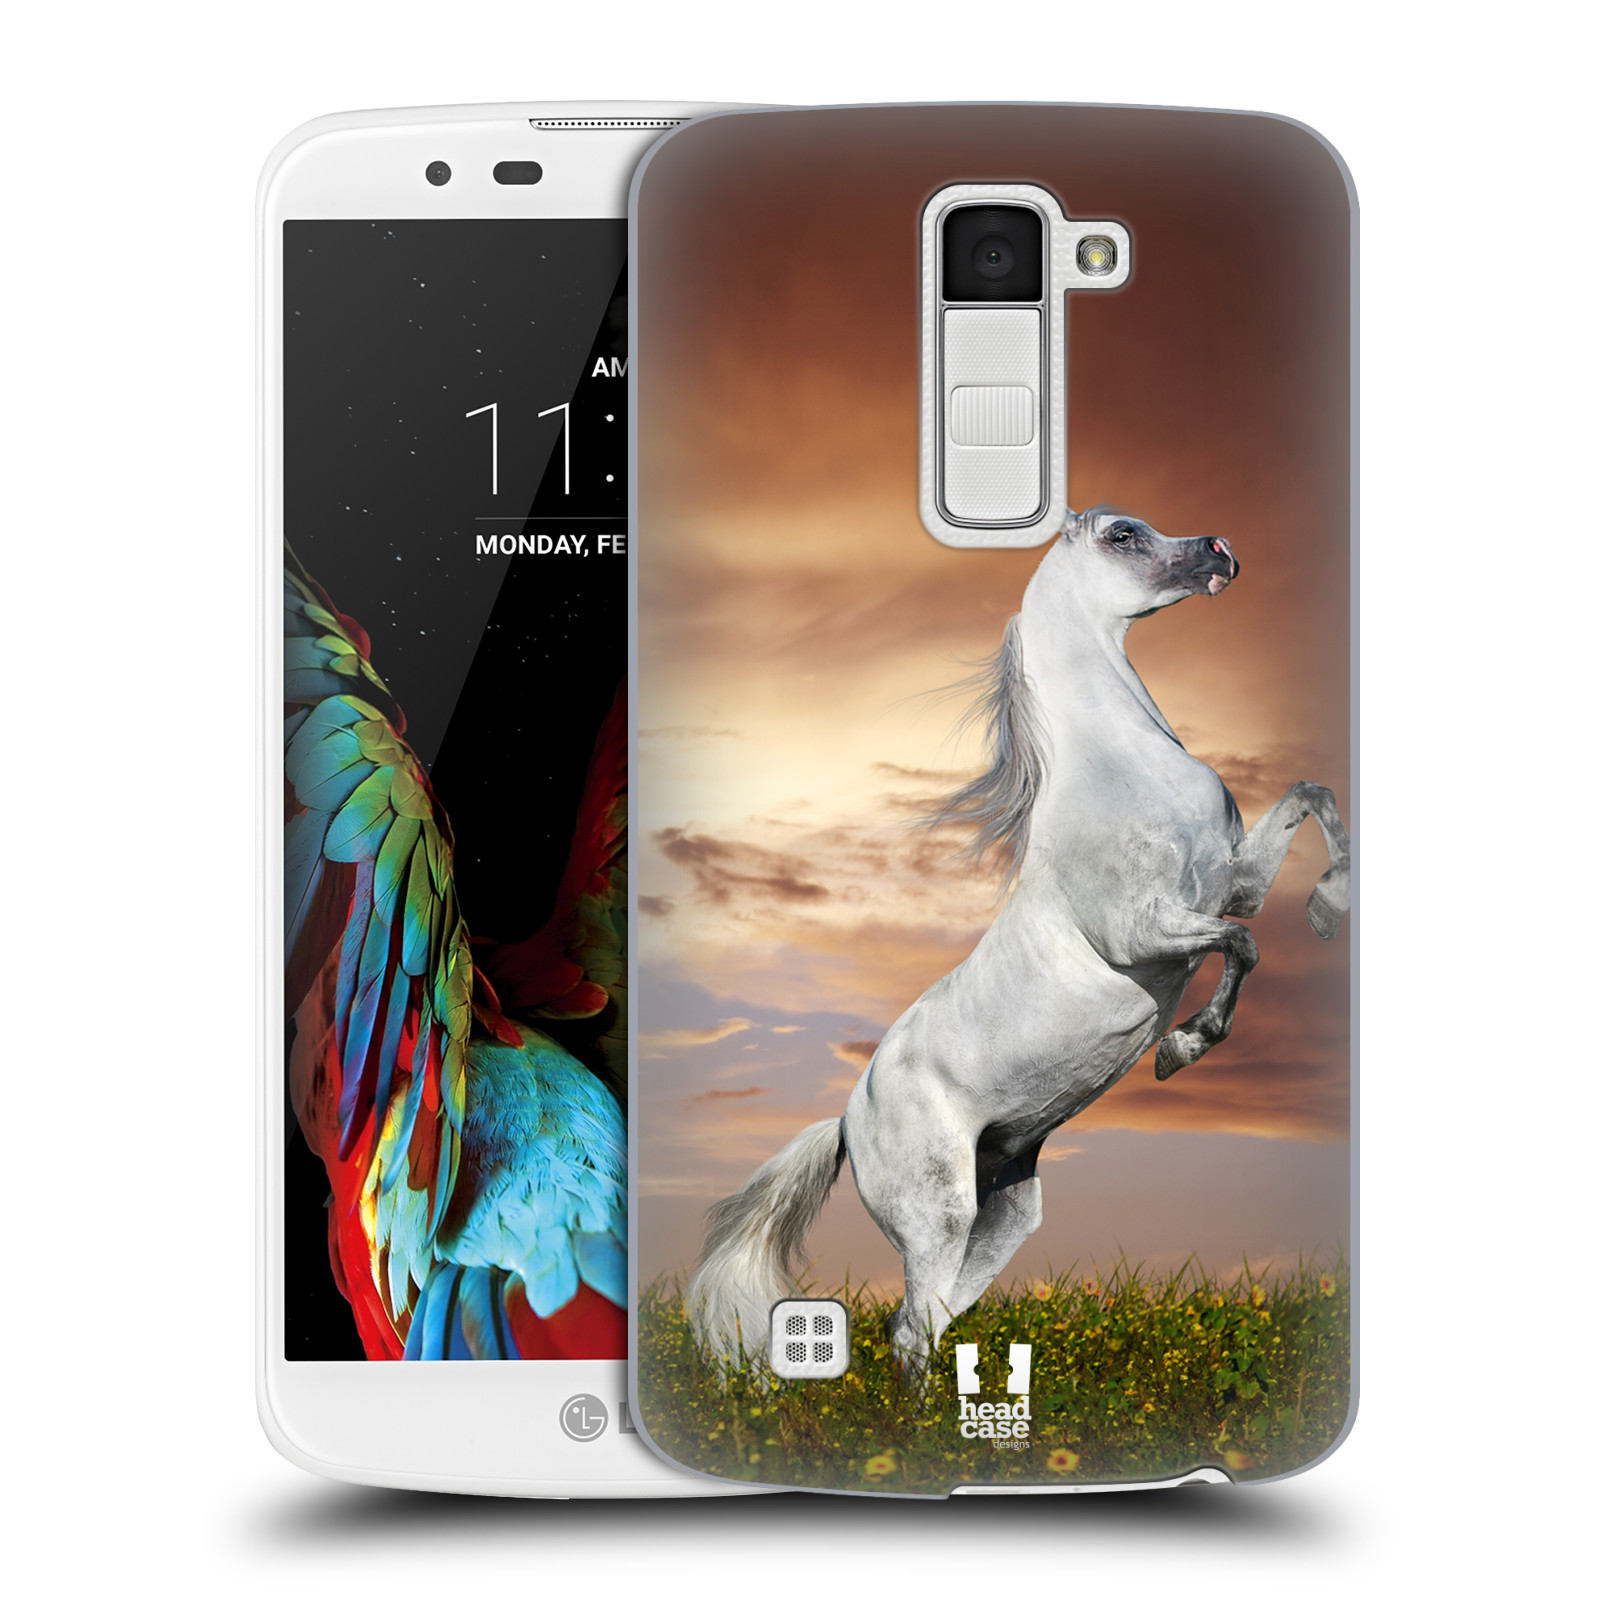 HEAD CASE plastový obal na mobil LG K10 vzor Divočina, Divoký život a zvířata foto DIVOKÝ KŮŇ MUSTANG BÍLÁ